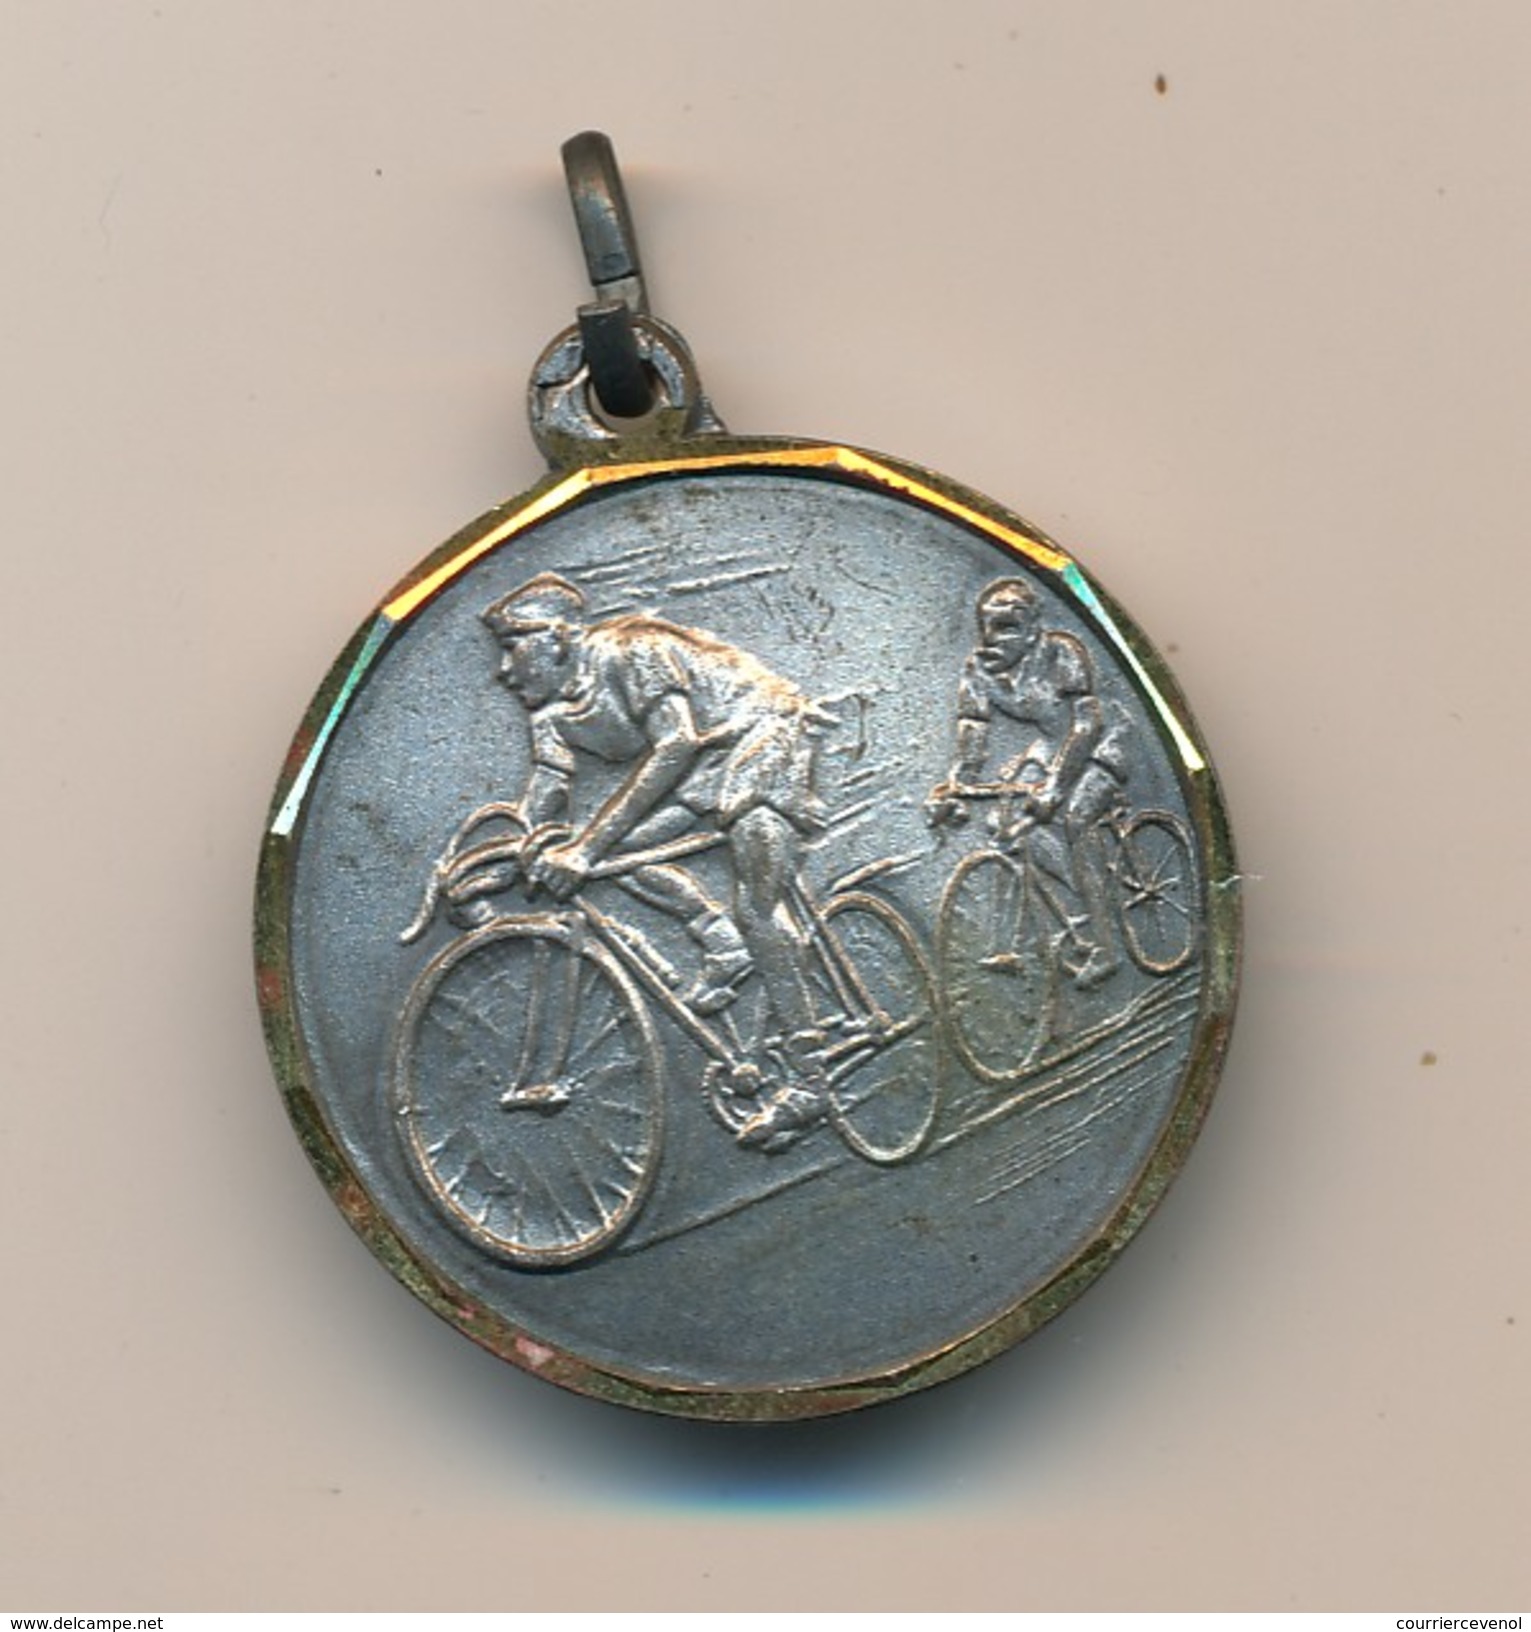 Petite Médaille (cyclistes) - P.J Rallye Du Castellet - Wielrennen